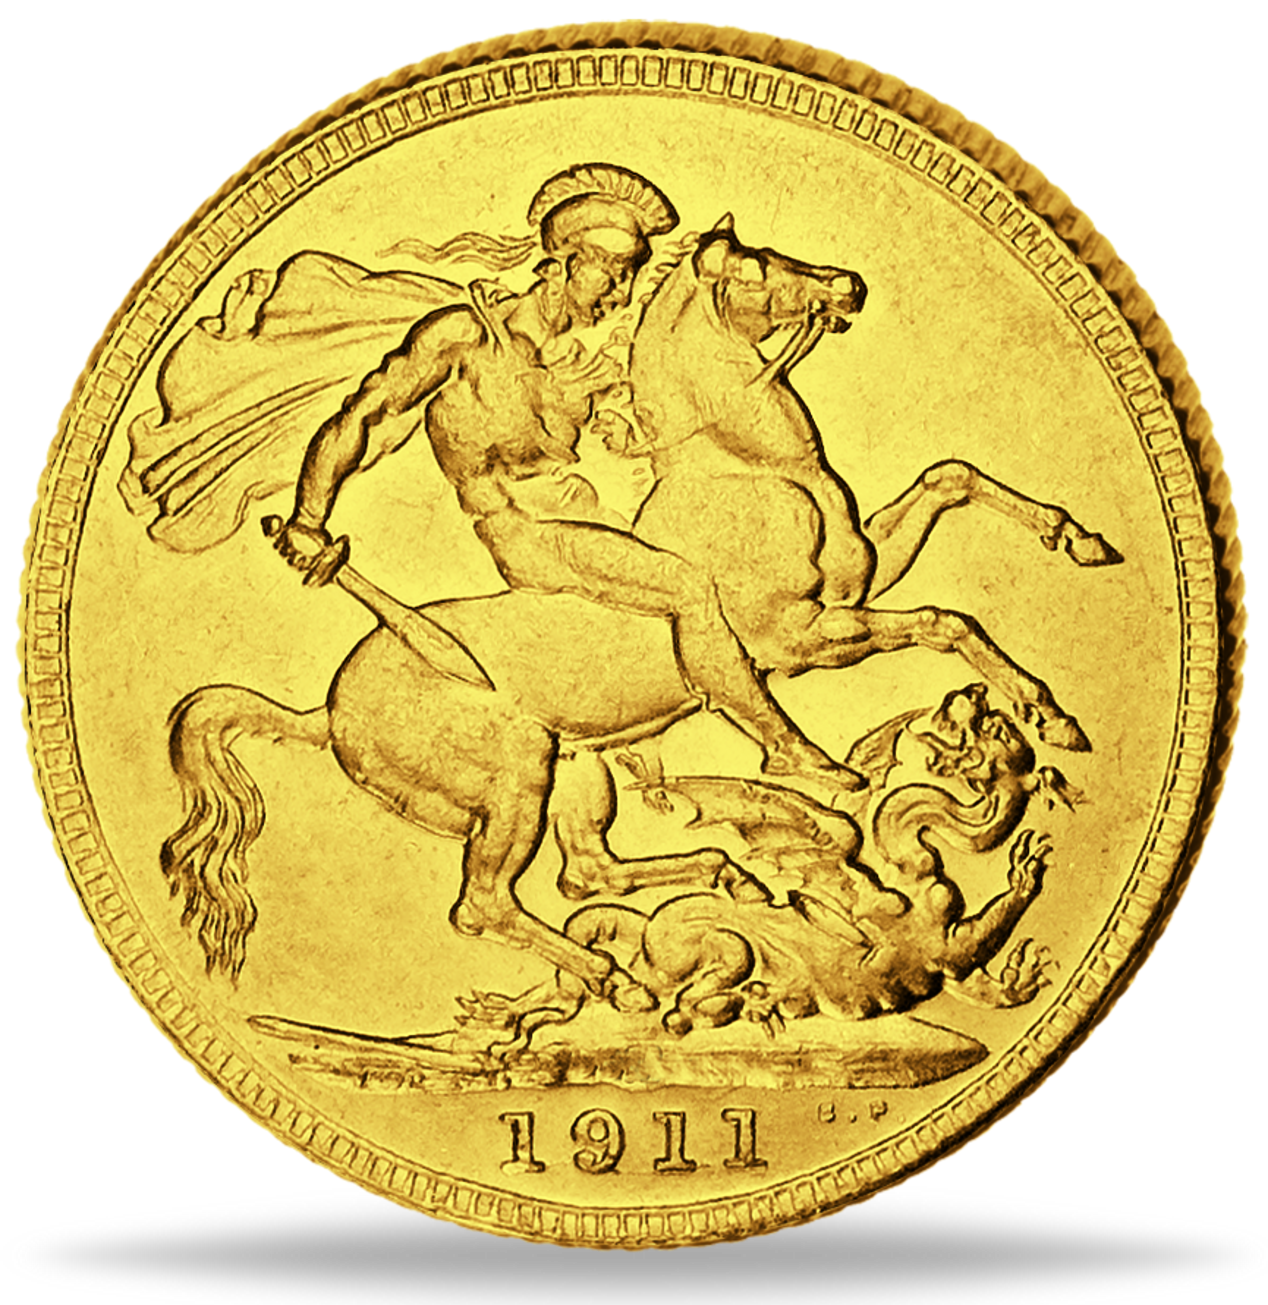 Soveriegn Goldmünzen - traditionsreiche britische Anlagemünze in Gold